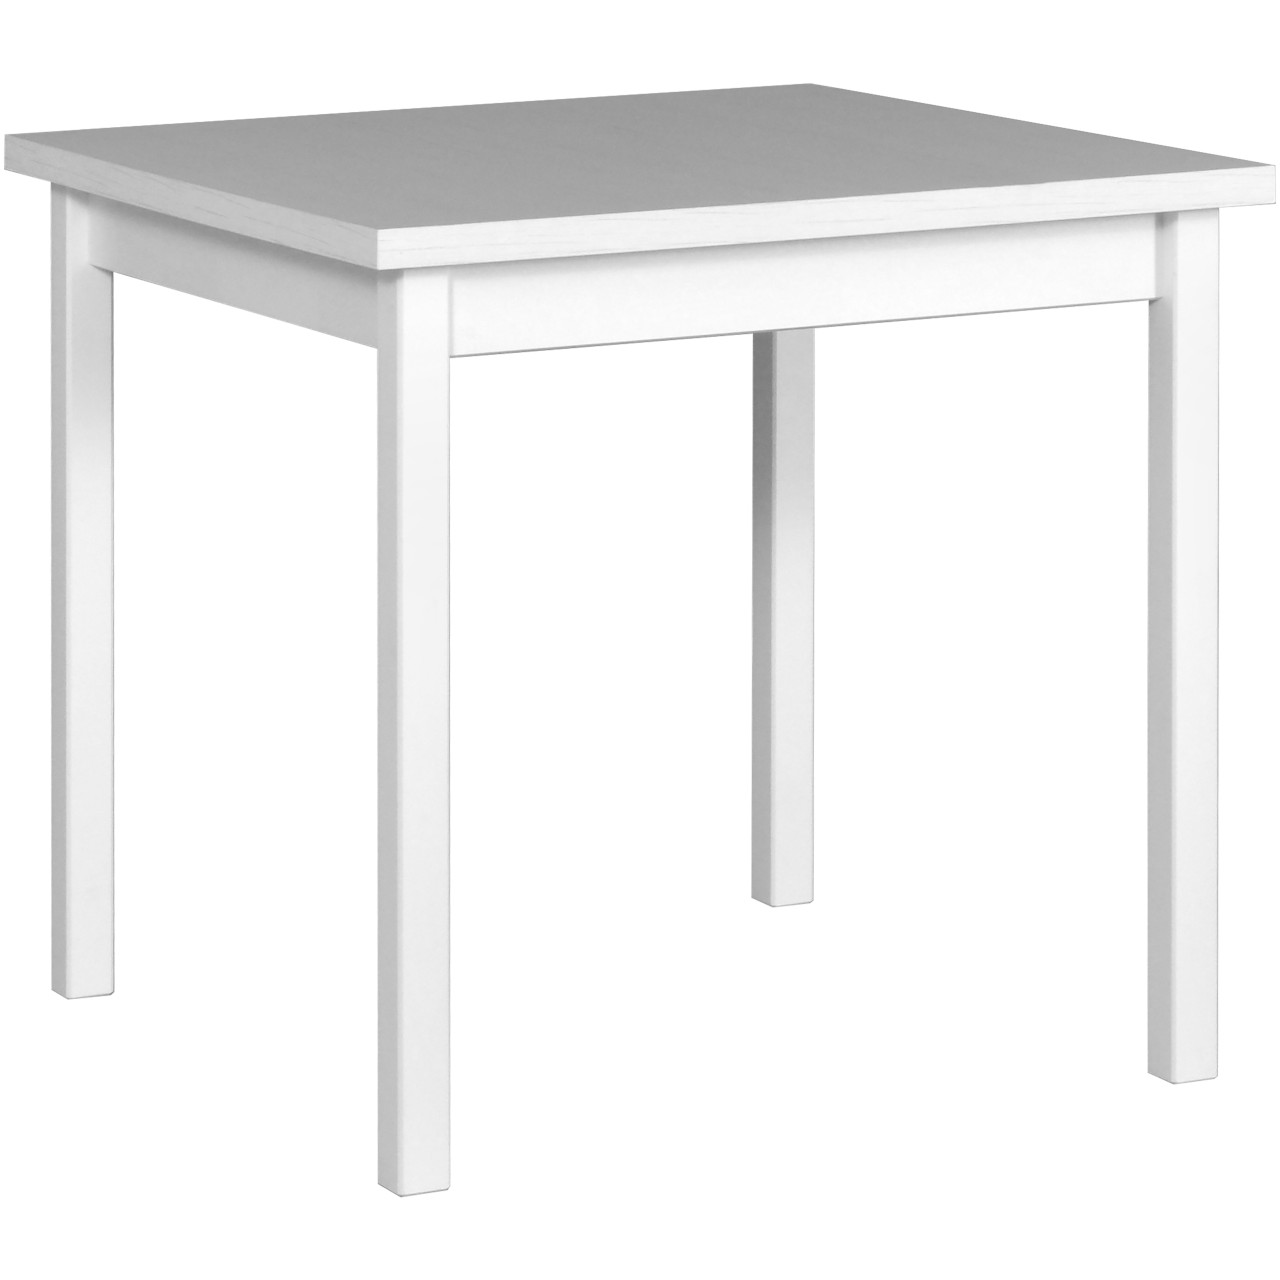 Stůl MAX 9 80x80 bílý laminát